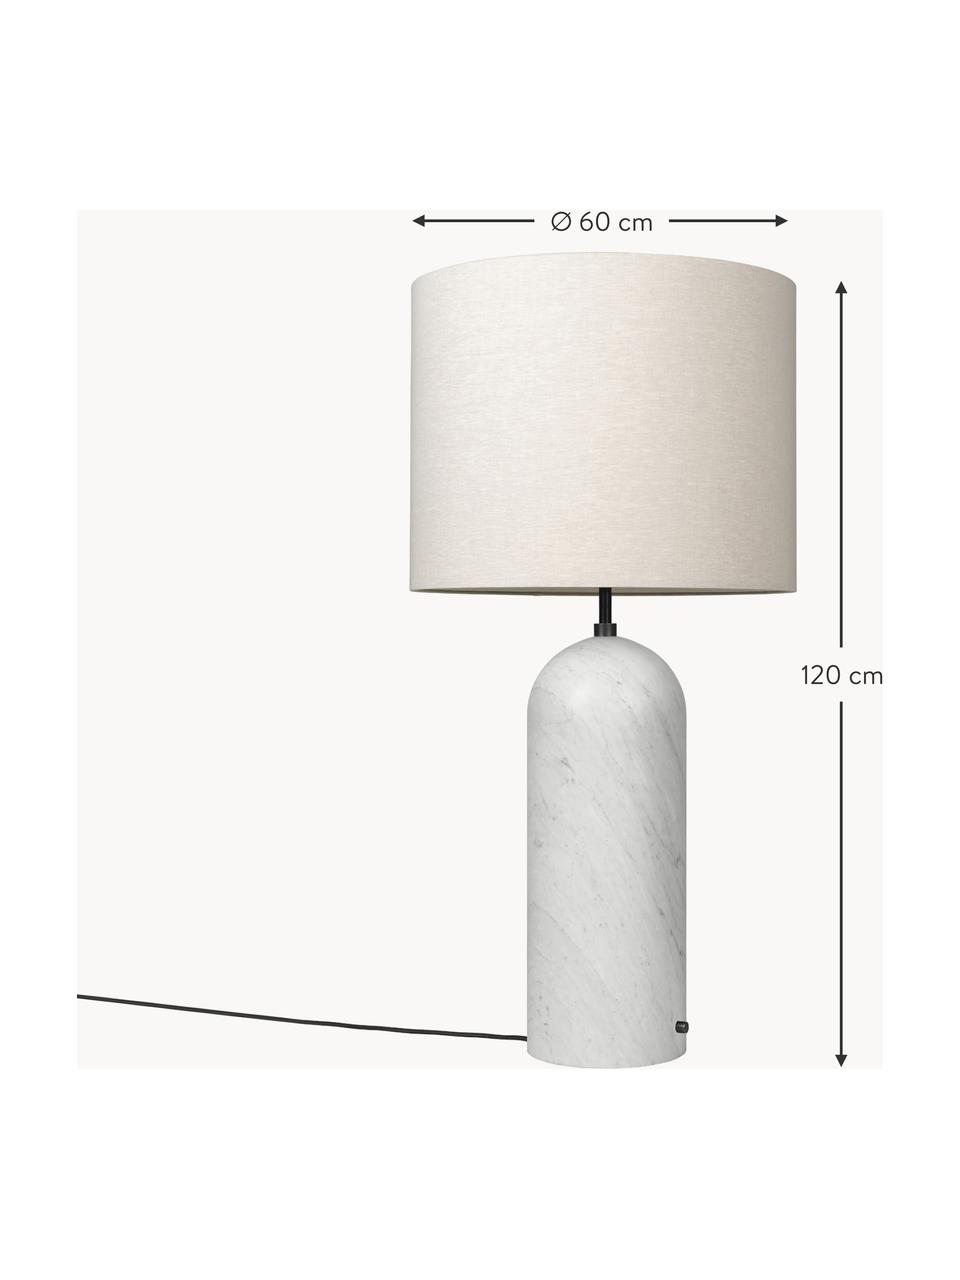 Kleine dimmbare Stehlampe Gravity mit Marmorfuß, Lampenschirm: Stoff, Lampenfuß: Marmor, Hellbeige, Weiß marmoriert, H 120 cm